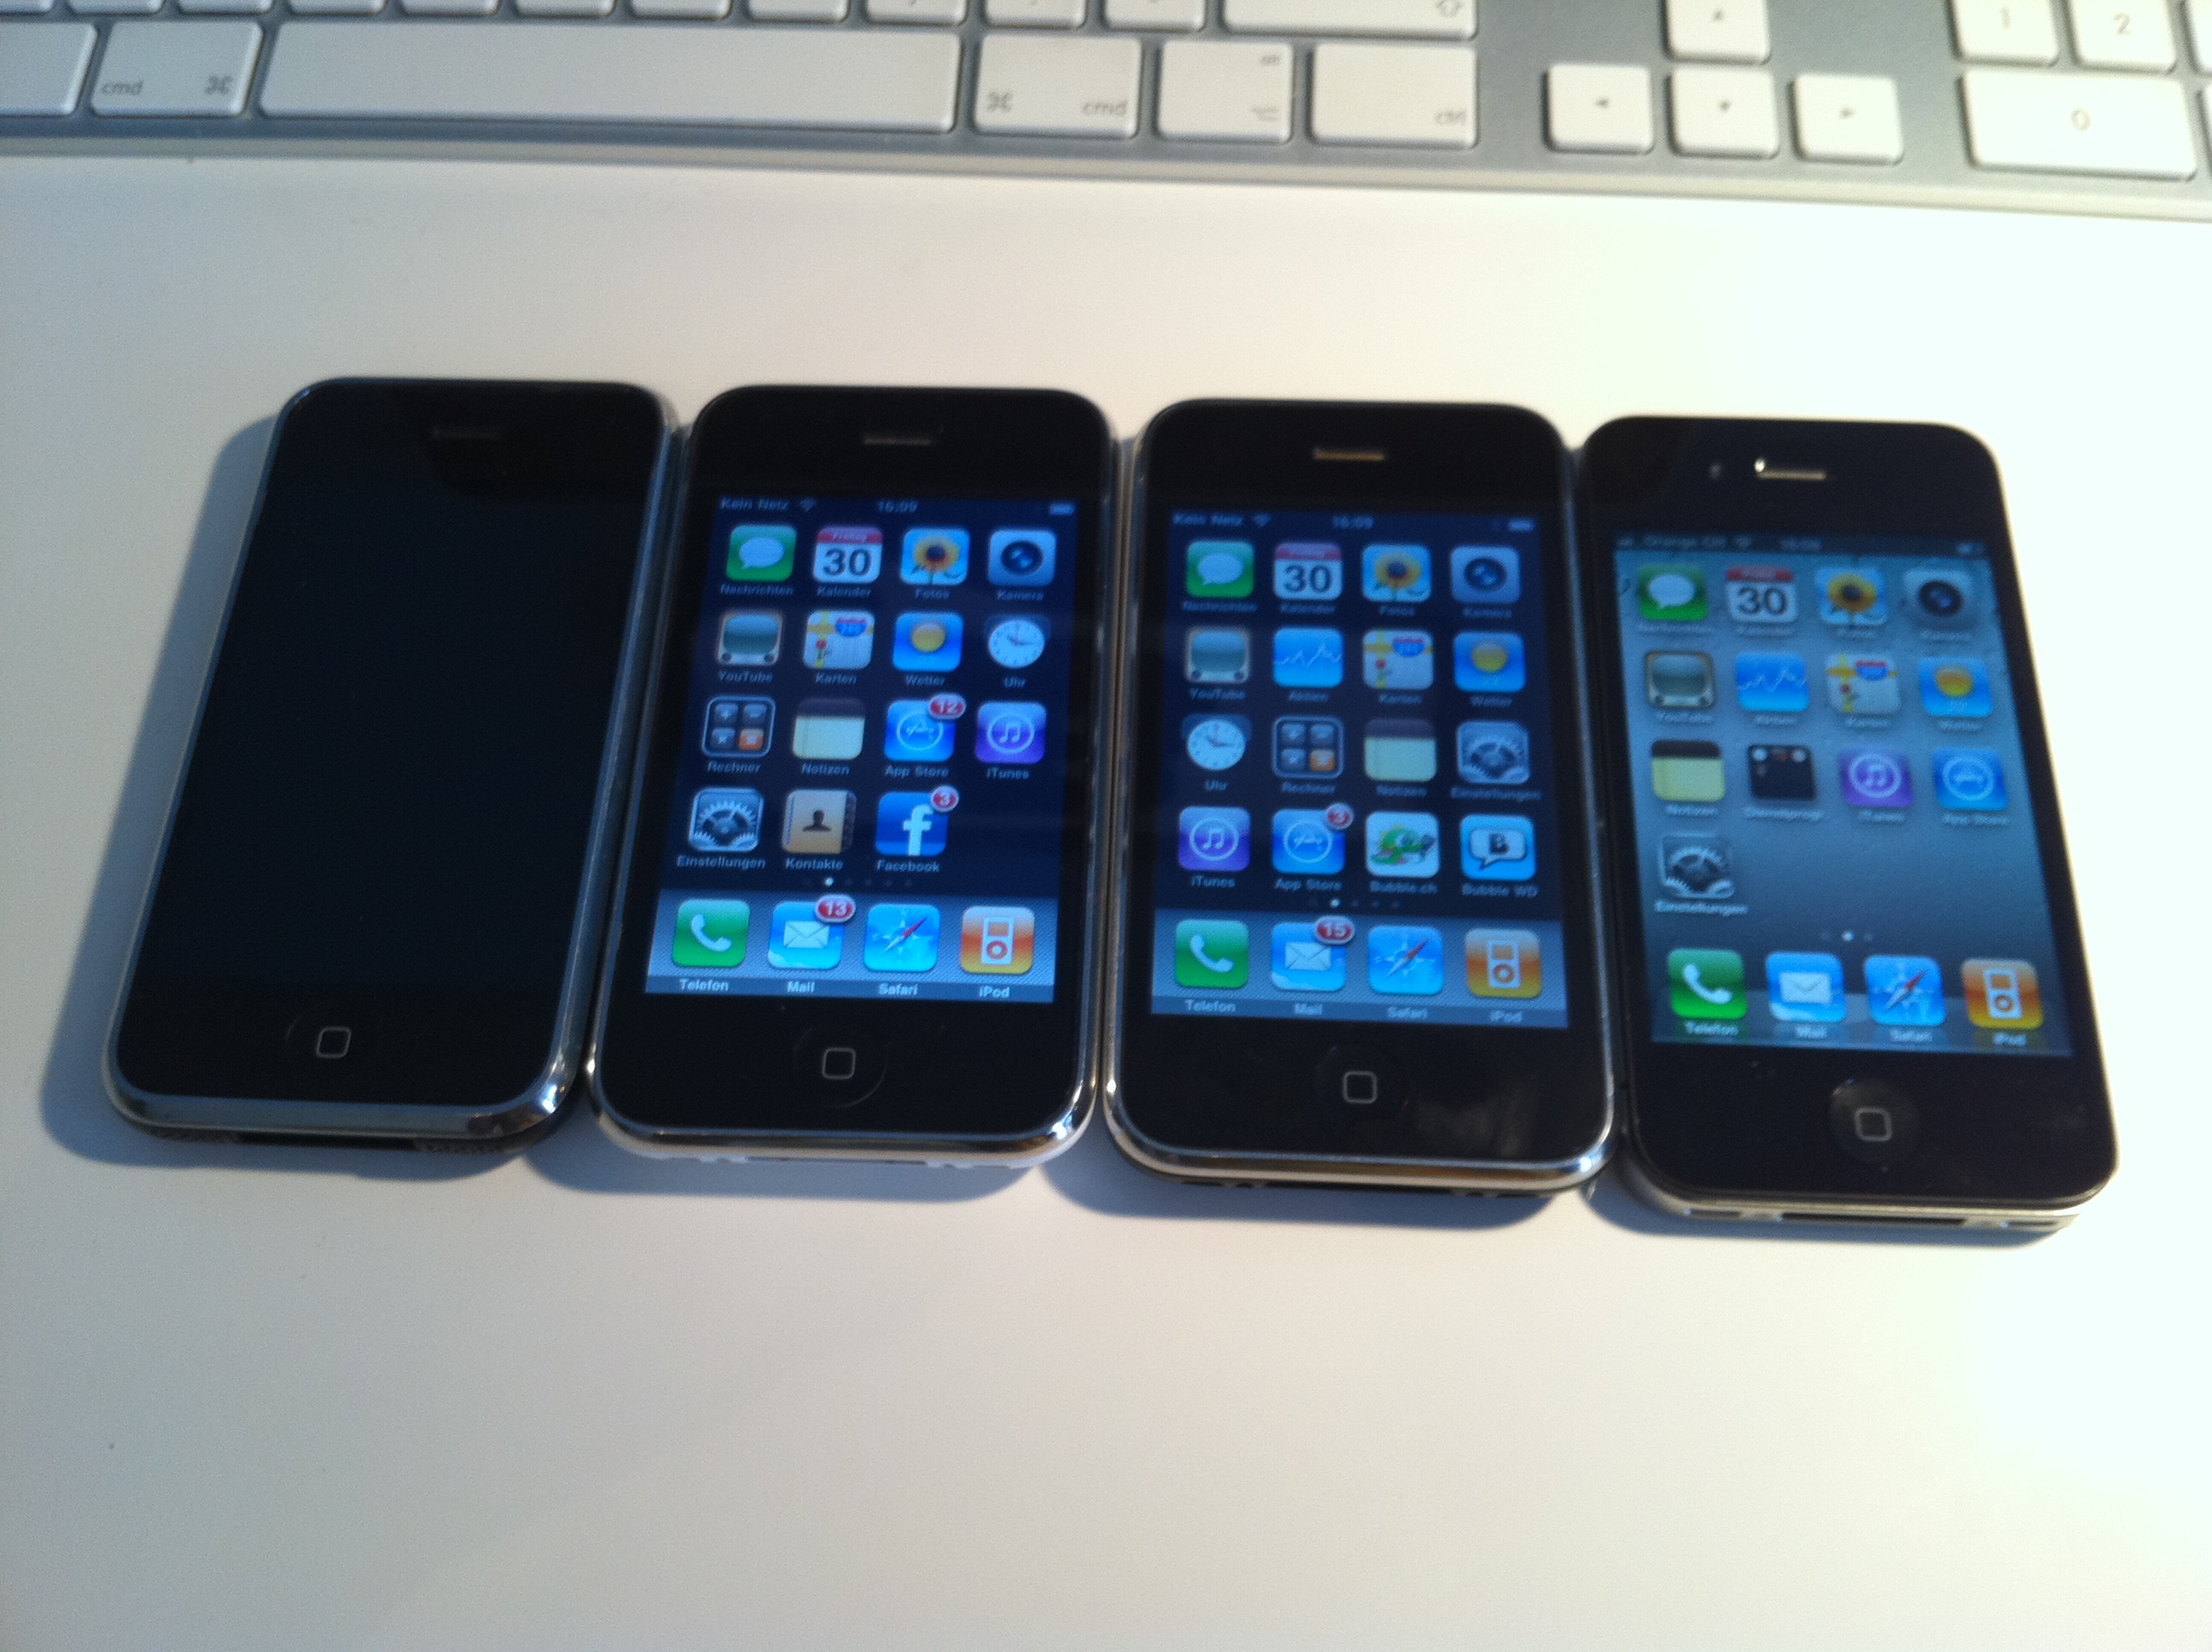 Die Evolution der iPhones: 1, 3G, 3GS, 4 (v.l.n.r.)